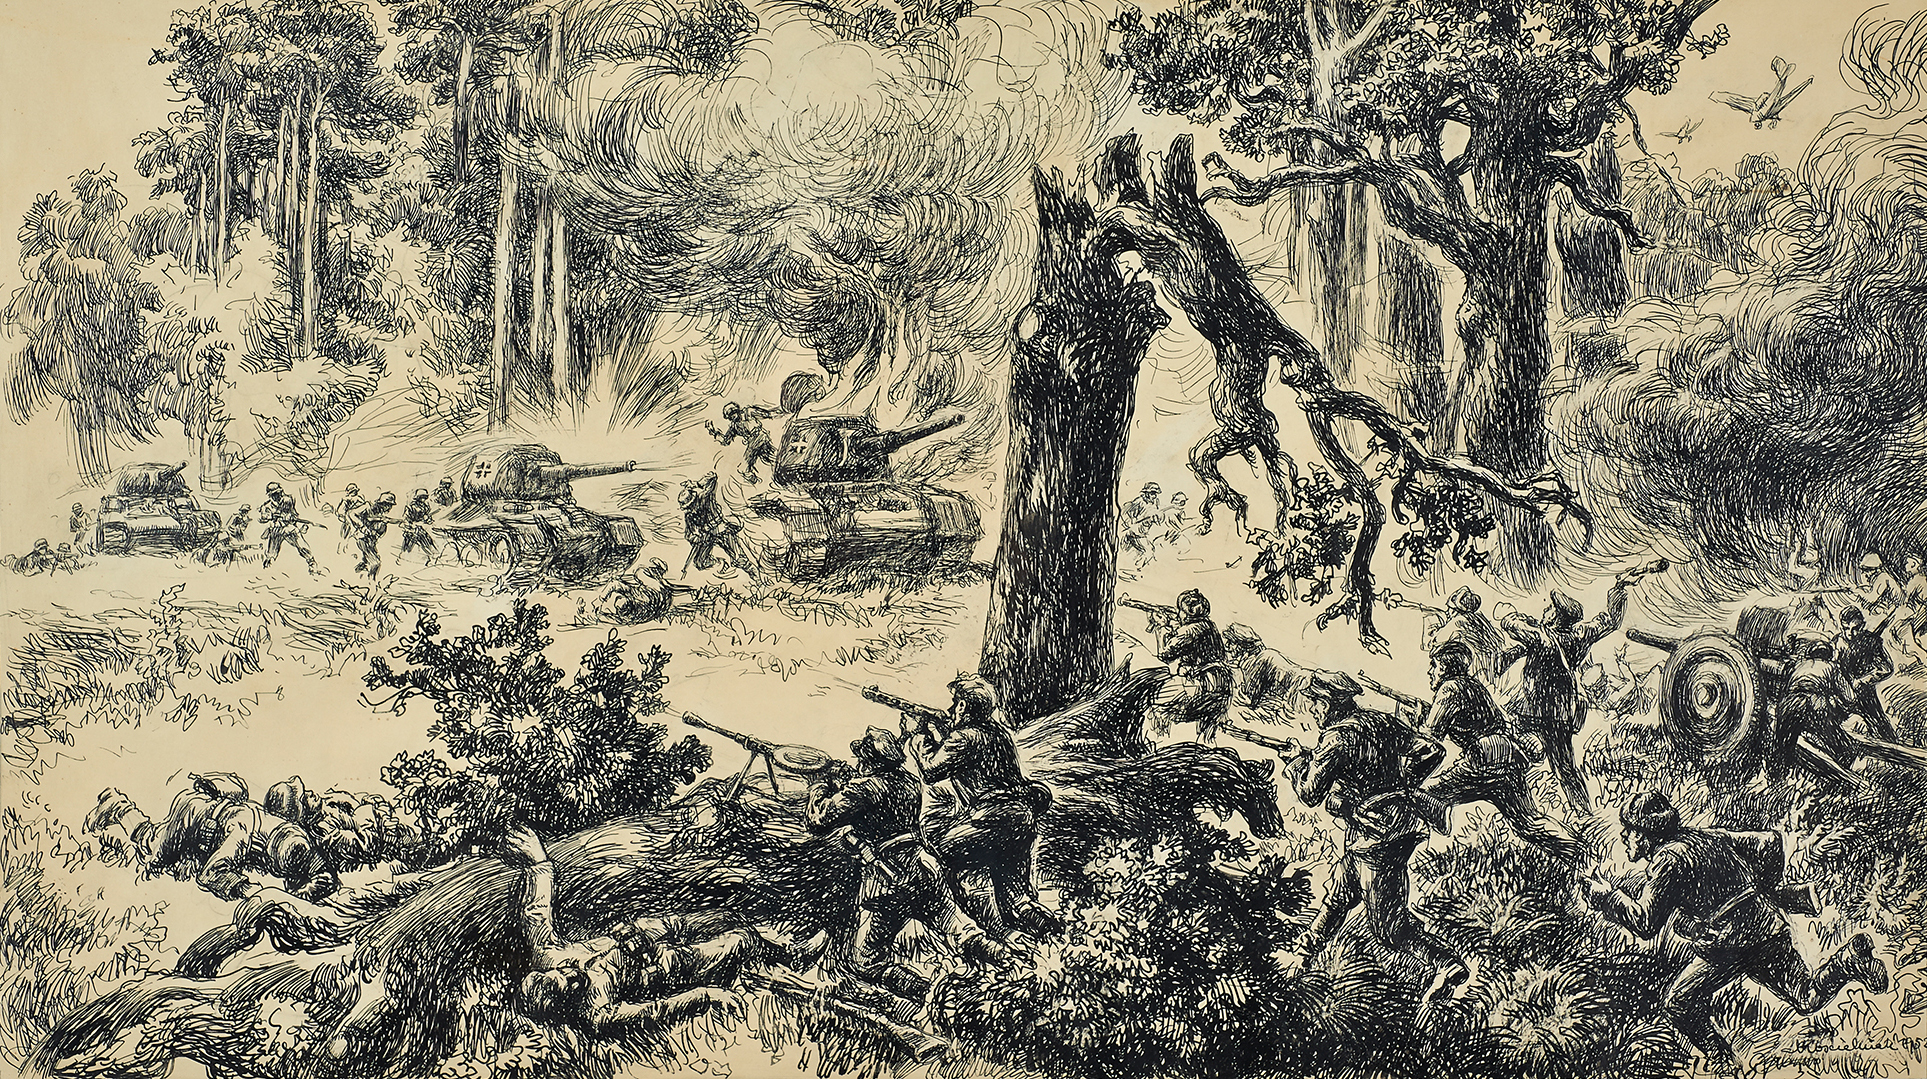 Grafika Mieczysława Kościelniaka, zatytułowana „Bitwa w Lasach Janowskich”, przedstawia moment natarcia niemieckich czołgów na grupę partyzantów. Scena rozgrywa się w lesie, na polanie wśród wysokich, pełnych zieleni drzew. Podzielona diagonalnie na dwie części od lewej do prawej strony, w centrum symbolicznie przełamane drzewo podkreśla dramatyzm sceny. Kompozycji dopełniają przedstawienia kłębiących się dymów z palącego się niemieckiego czołgu w lewej części obrazu oraz pożaru lasu w części lewej, spowodowanego nalotem samolotów przedstawionych w prawym, górnym rogu obrazu.